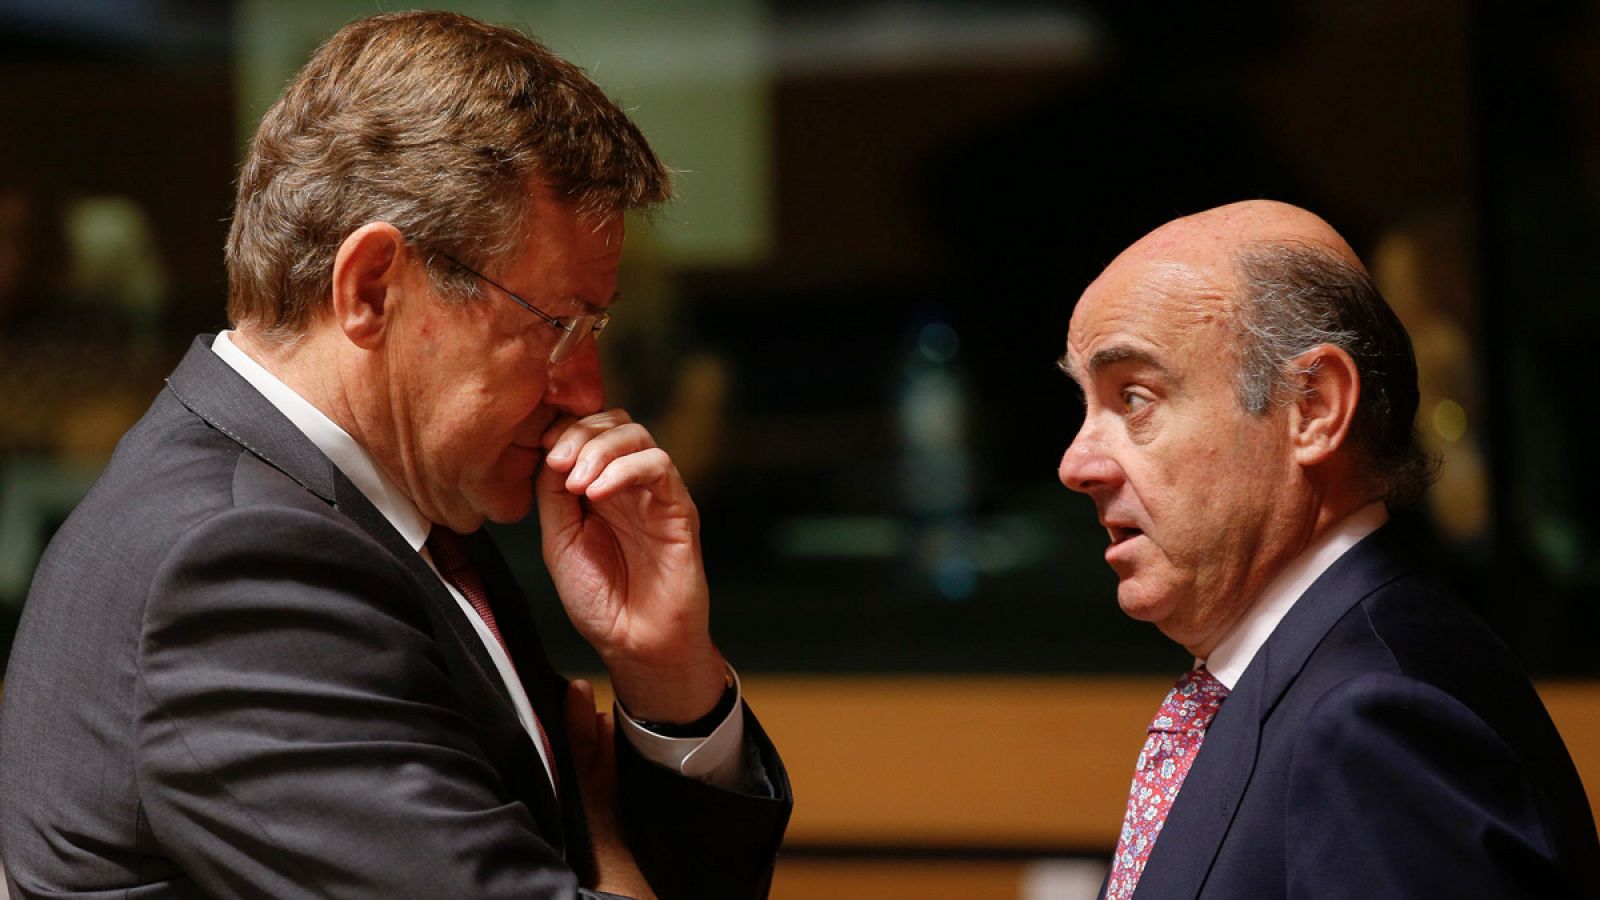 El ministro español de Economía en funciones, Luis de Guindos, conversa con el ministro belga de Finanzas, Johan Van Overtveldt